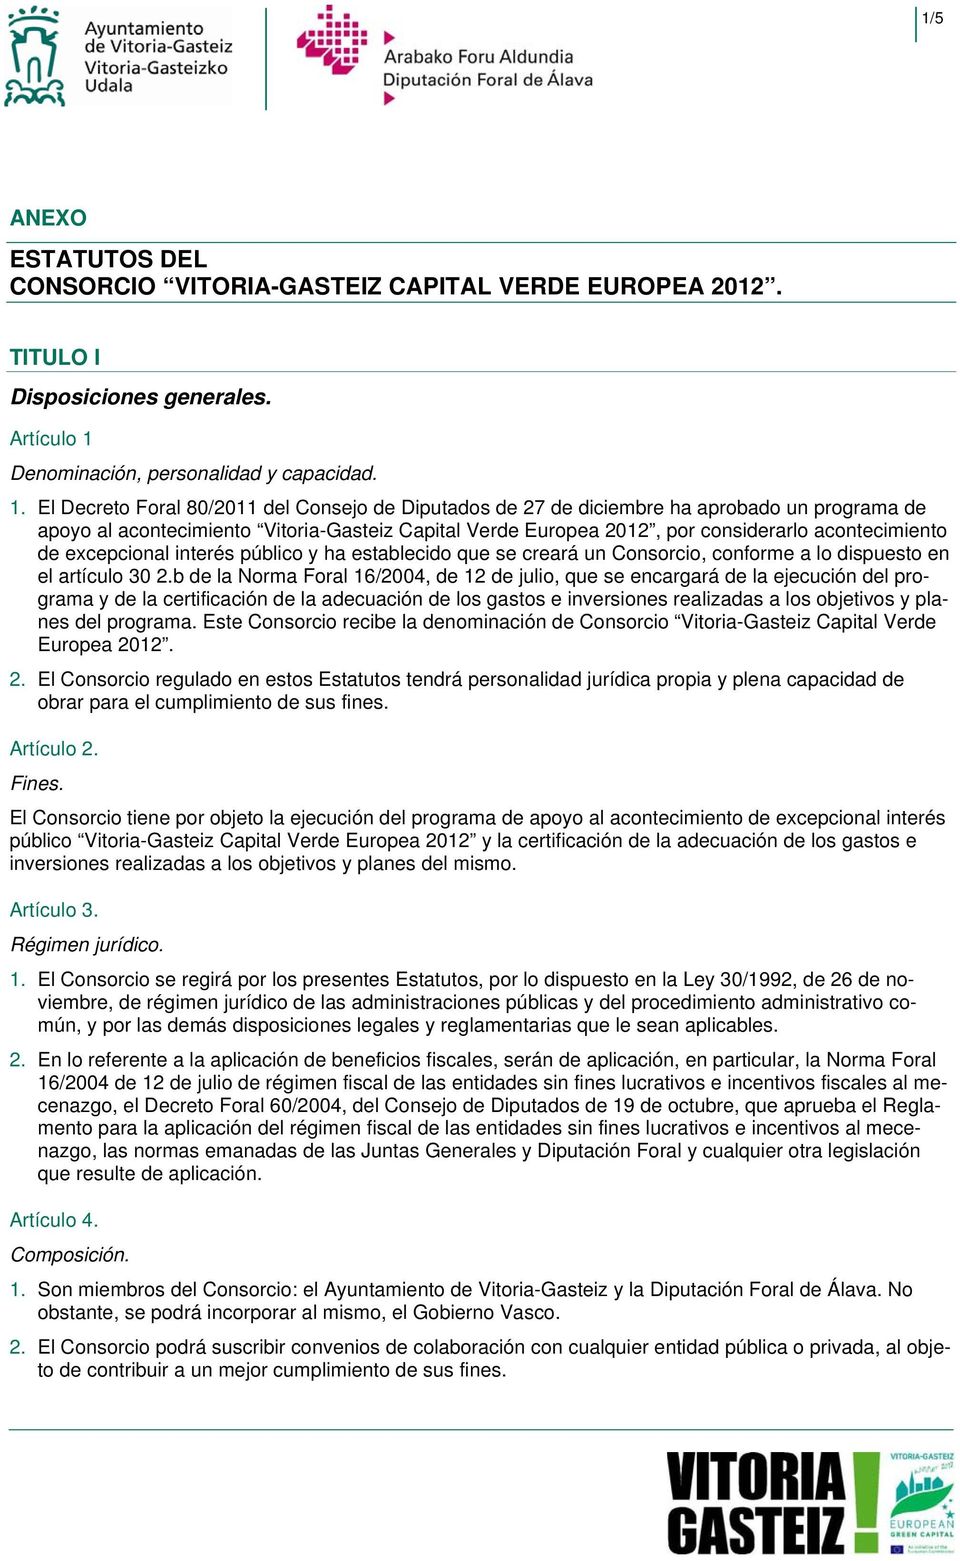 El Decreto Foral 802011 del Consejo de Diputados de 27 de diciembre ha aprobado un programa de apoyo al acontecimiento Vitoria-Gasteiz Capital Verde Europea 2012, por considerarlo acontecimiento de